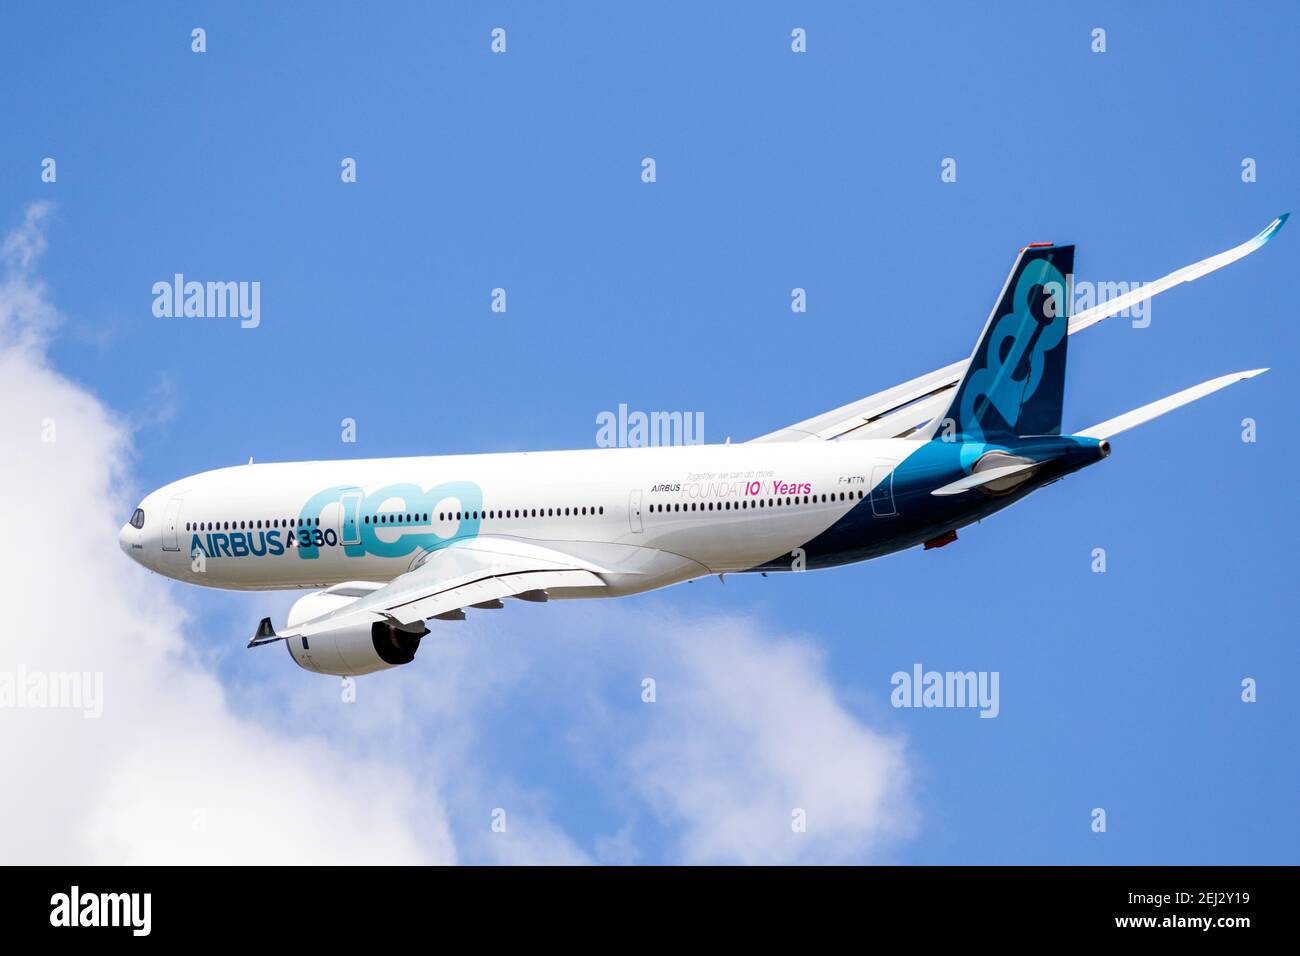 Neuer Airbus A330neo Passagierflugzeug im Flug auf der Paris Air Show.  Frankreich - 21. Juni 2019 Stockfotografie - Alamy